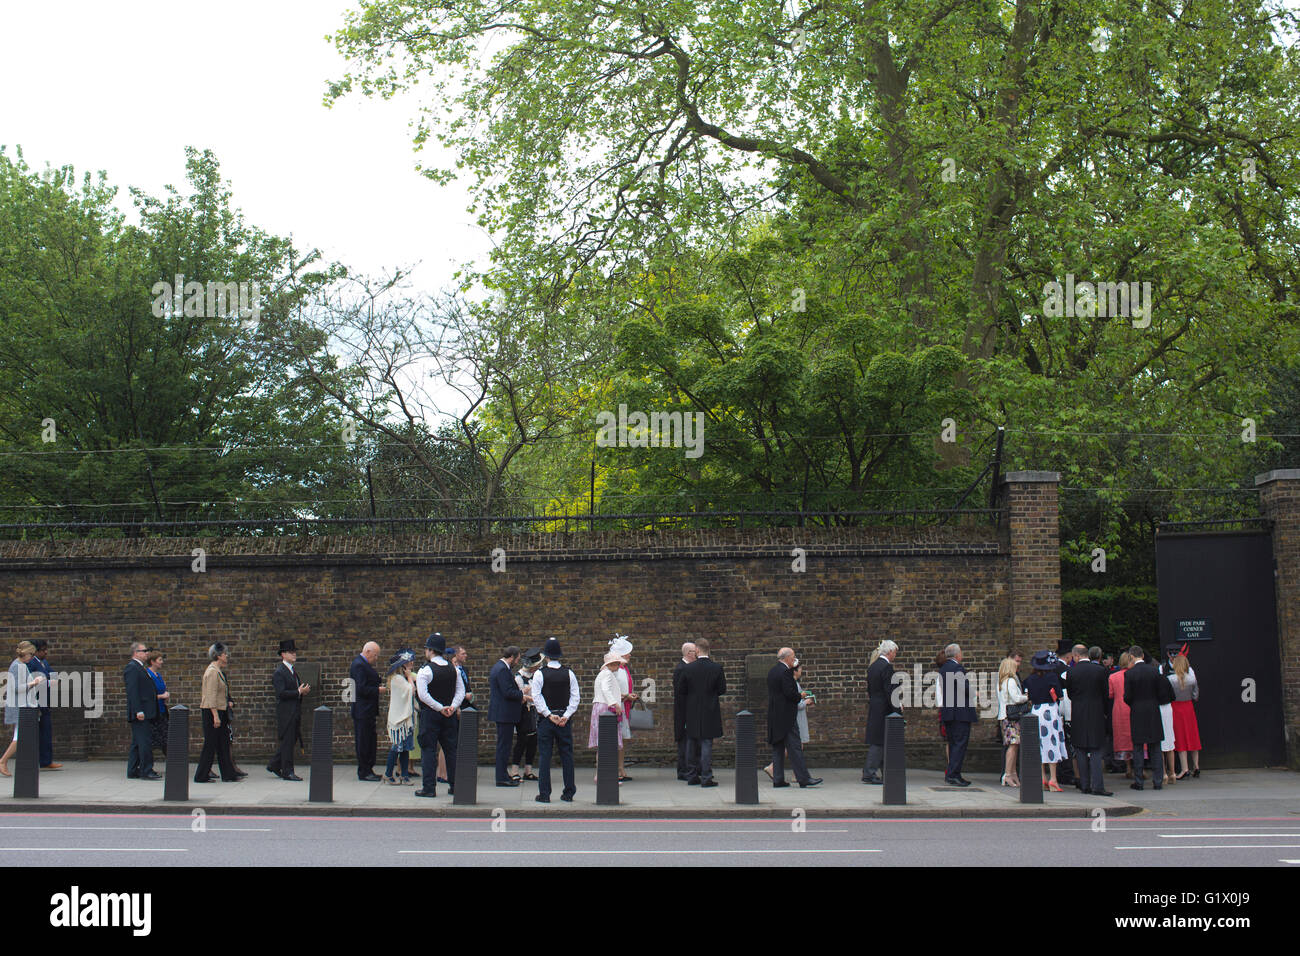 Les participants à l'assemblée annuelle de la Famille Royal Garden Party à l'extérieur de la file d'entrée de Buckingham Palace, Londres, UK Banque D'Images